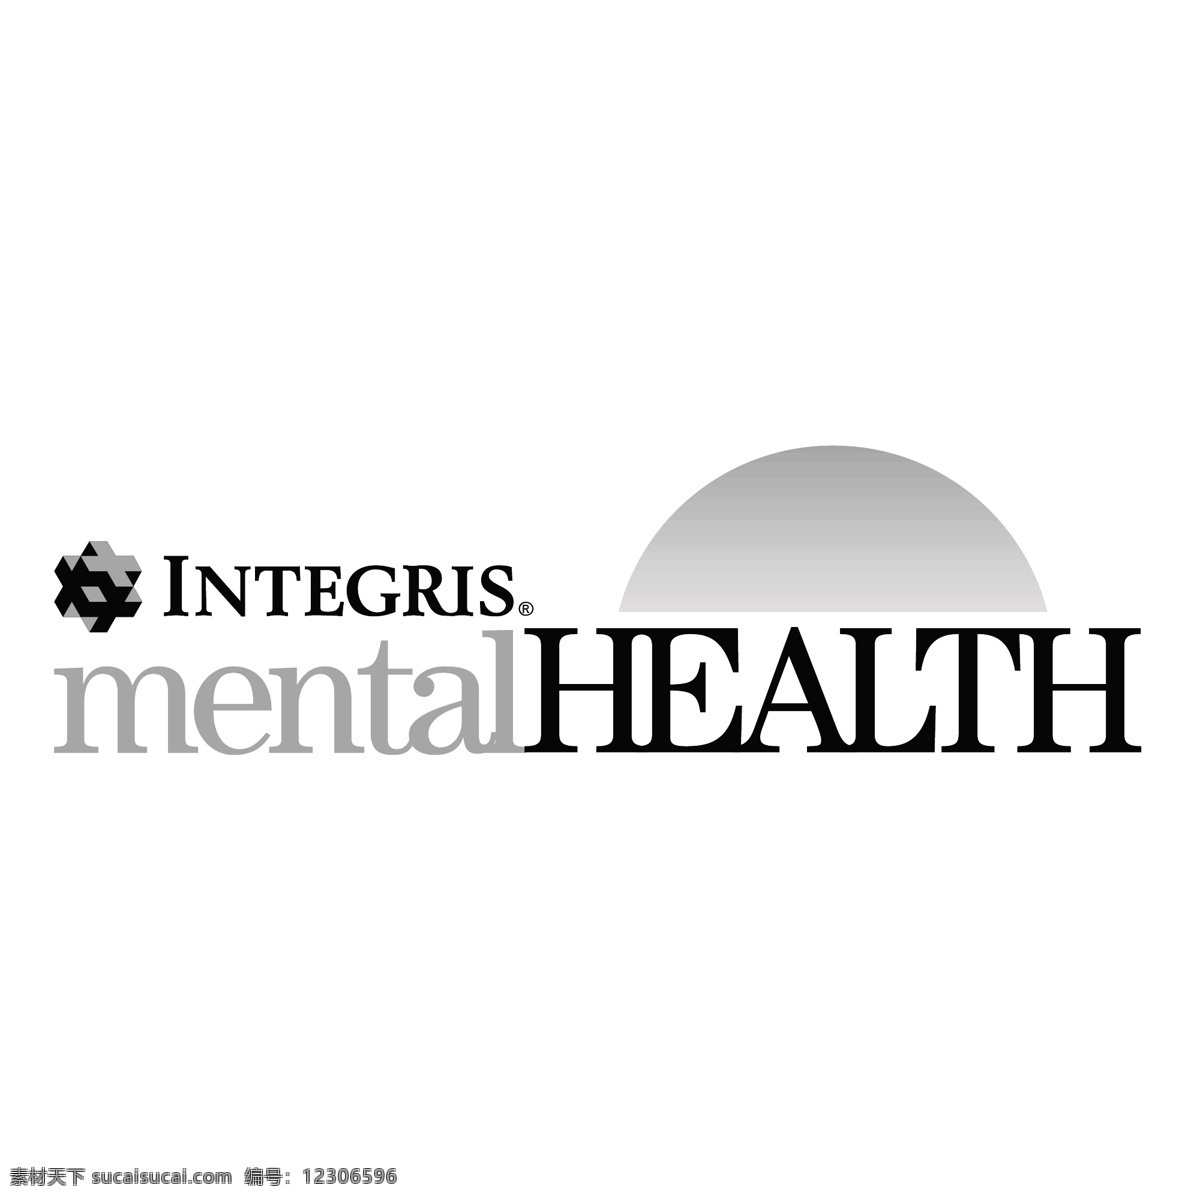 特格 雷斯 心理健康 标识 公司 免费 品牌 品牌标识 商标 矢量标志下载 免费矢量标识 矢量 psd源文件 logo设计